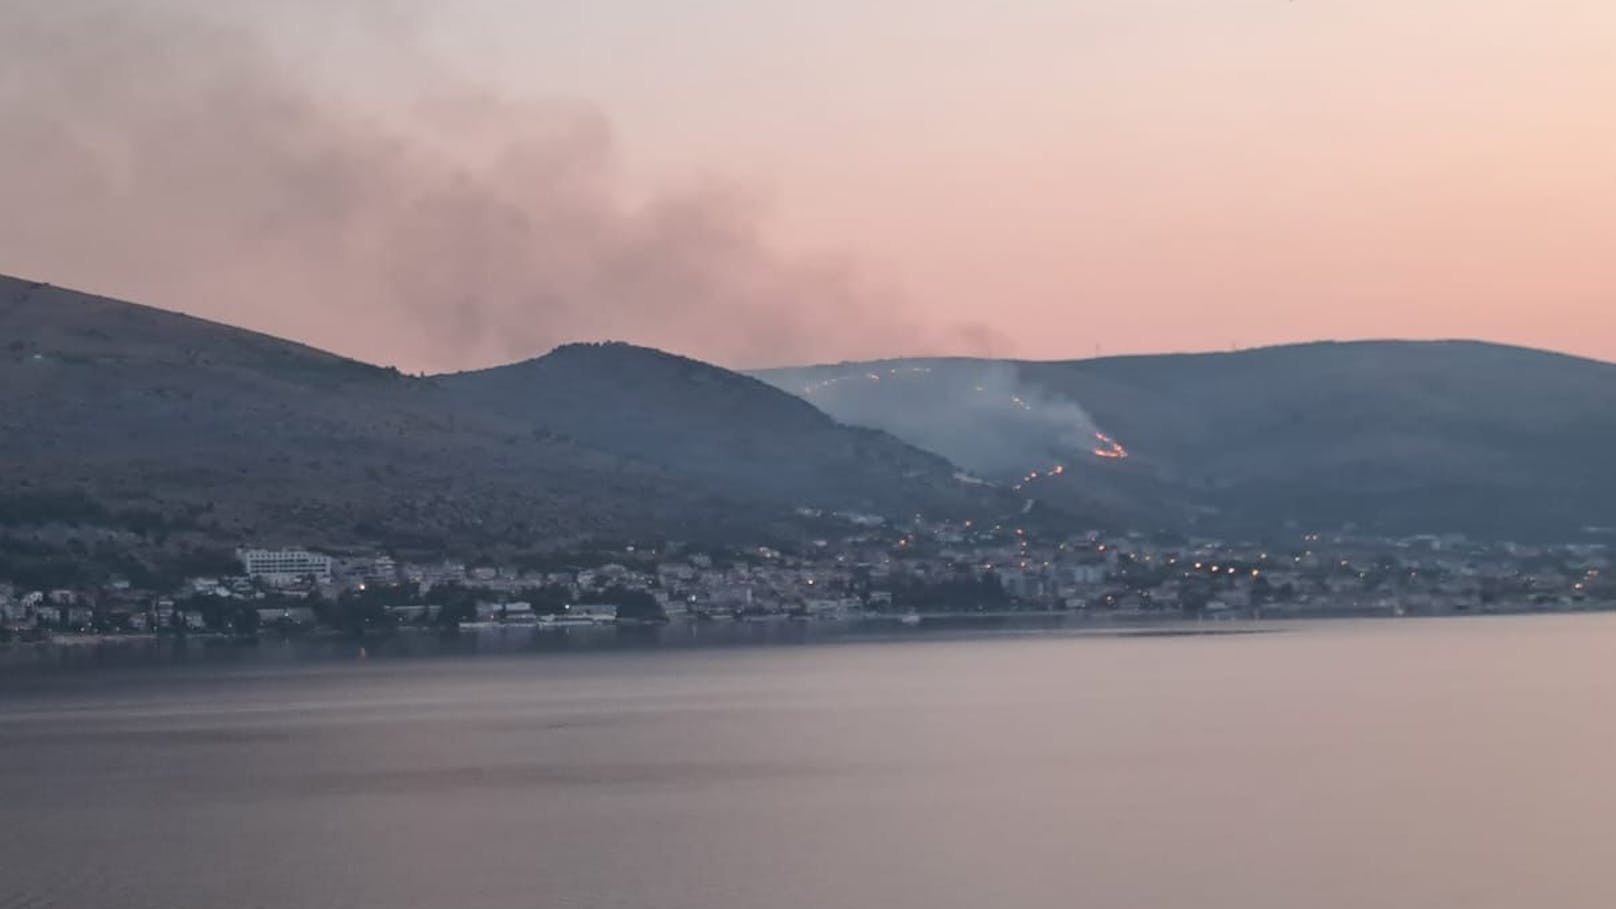 35 Hektar in Flammen – Riesen-Waldbrand am Balkan